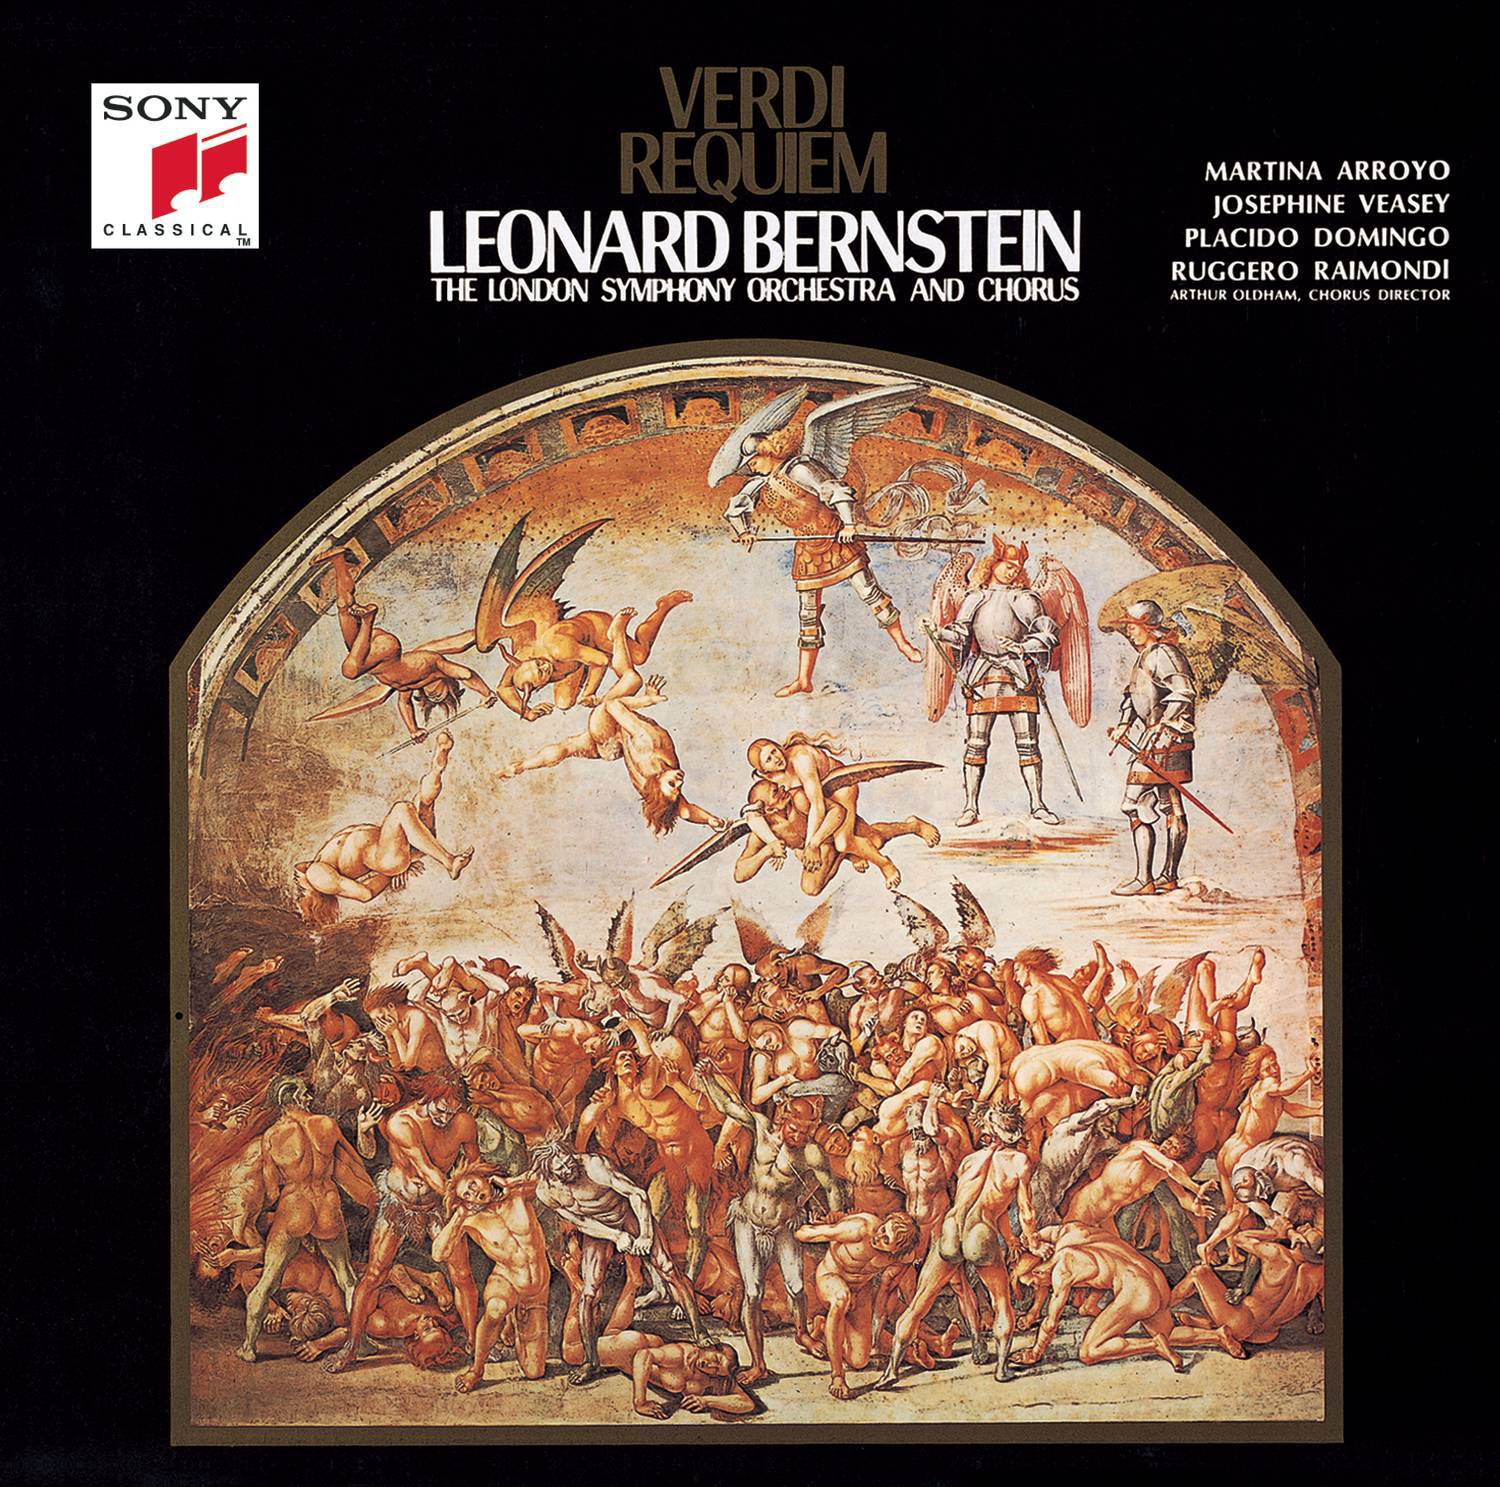 Verdi: Requiem专辑